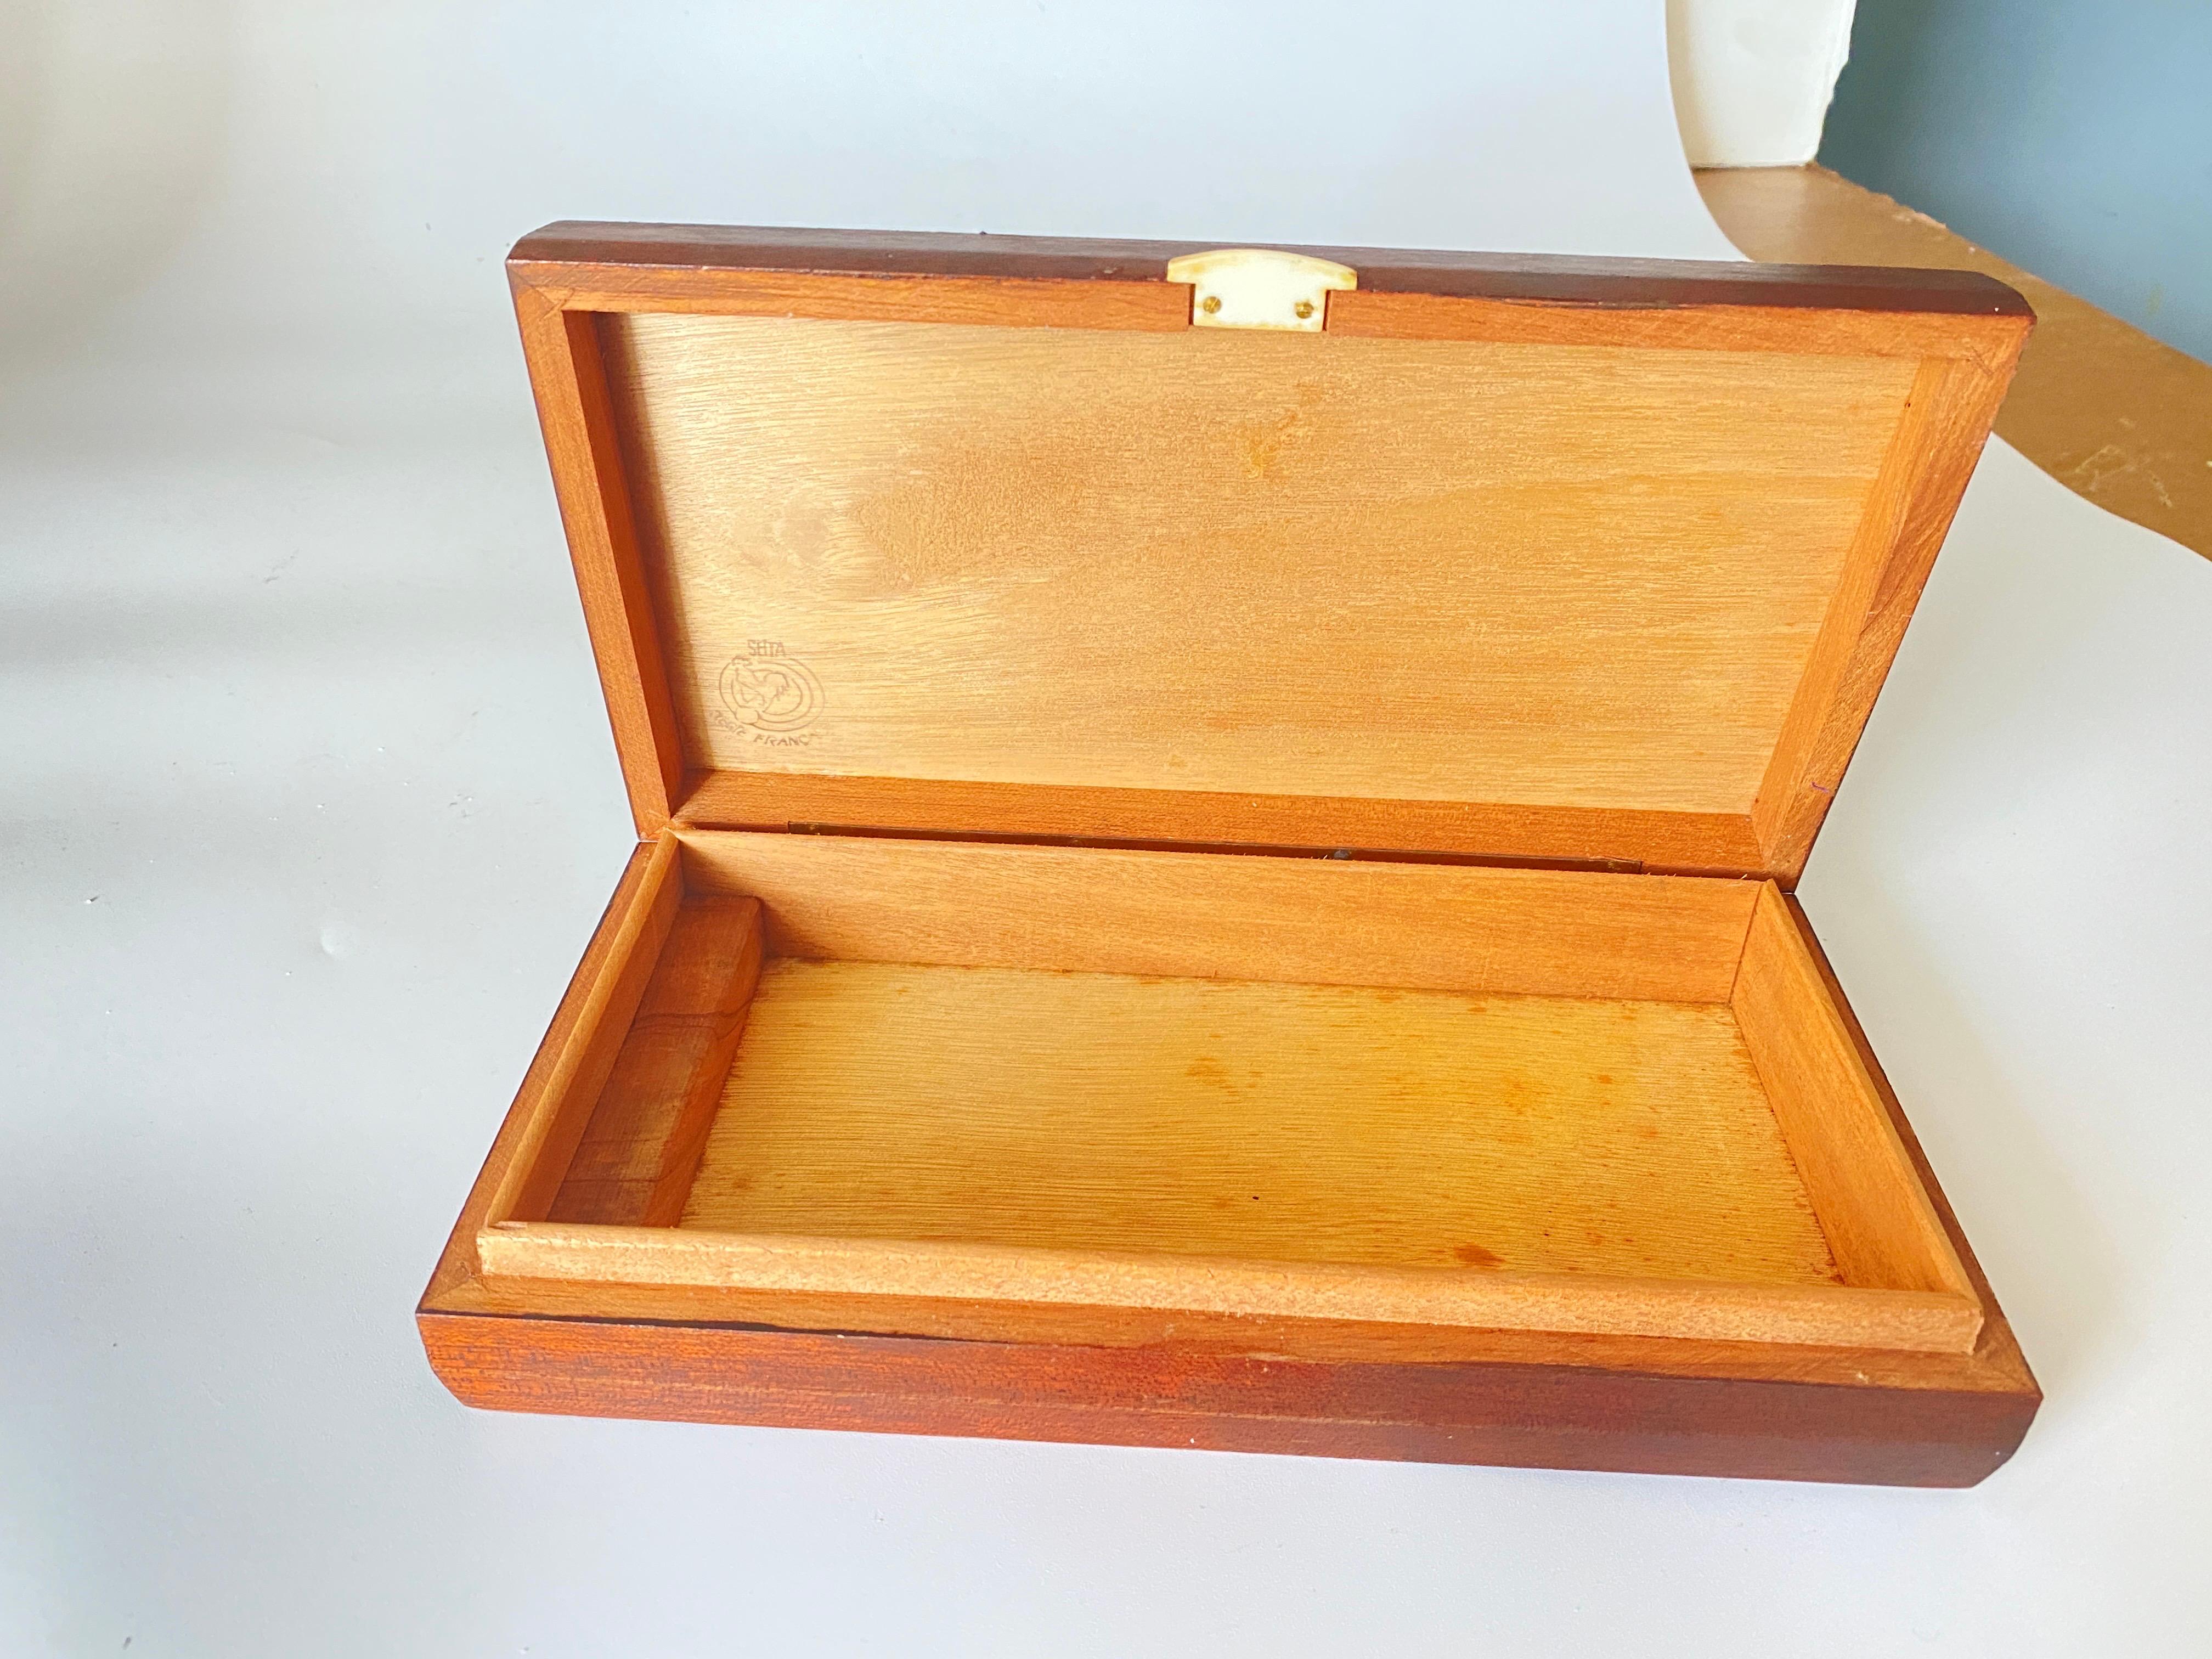 Cette boîte provient de France. Fabriqué en 1940, il s'agit d'un objet art déco. La boîte est en bois.
C'est une boîte à cigares mais elle peut être utilisée comme boîte documentaire, à la maison ou dans un bureau.